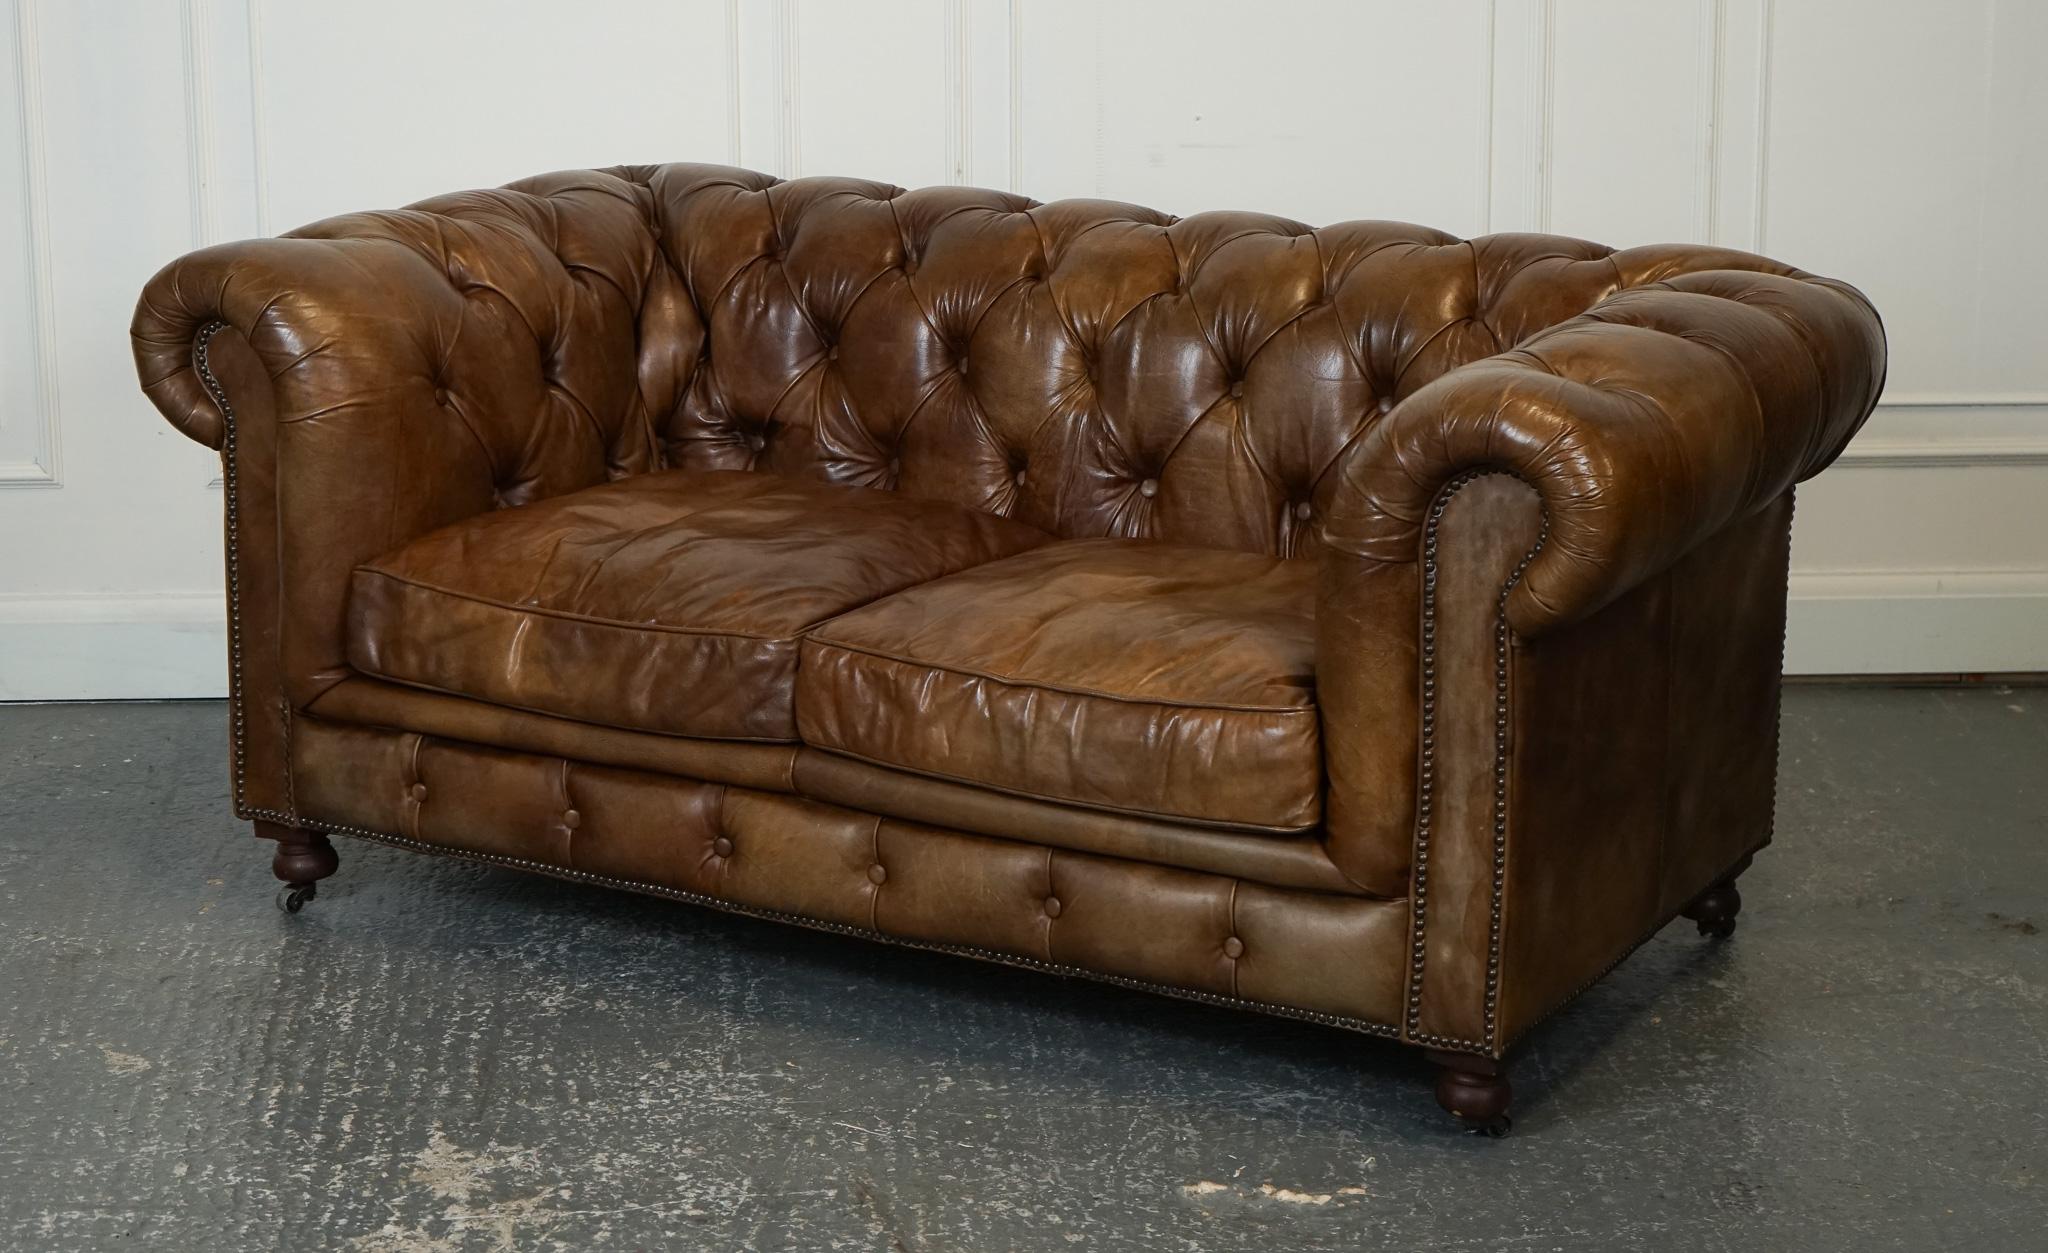 
Wir freuen uns, dieses wunderschöne Heritage Brown Chesterfield Ledersofa von Halo zum Verkauf anzubieten.

Das prächtige Chesterfield-Sofa von Halo ist ein echtes Statement, das Luxus und Eleganz ausstrahlt. Das mit braunem Leder gepolsterte Sofa